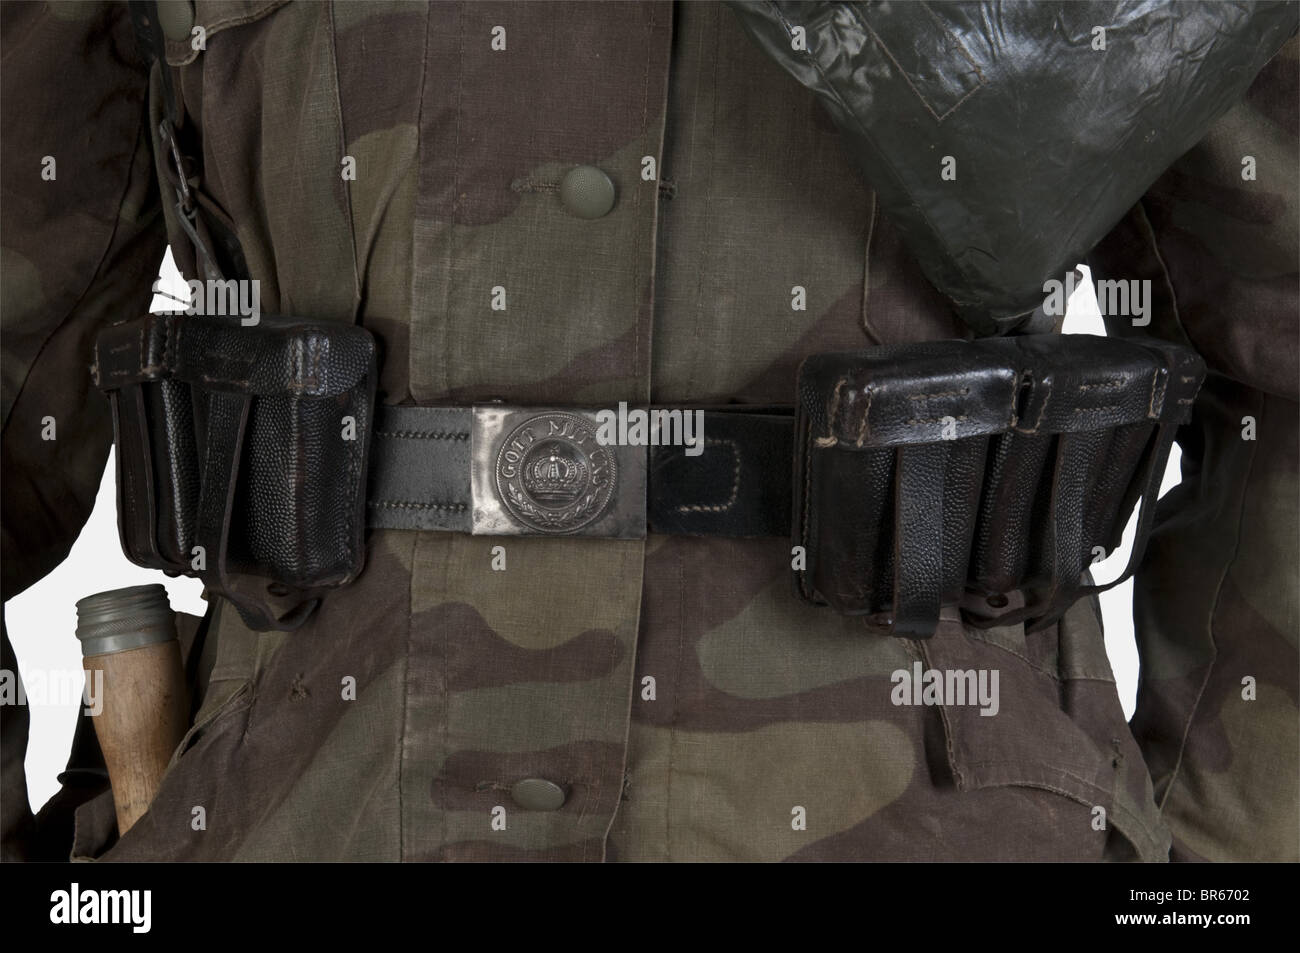 SCHUTZSTAFFEL, Mannequin Waffen-SS en tenue camouflée, comprenant une copie  de casquette en toile camouflée italienne avec tête de mort frontale  (copie), une parka réglementaire de la Waffen-SS fabriquée en tissu de  camouflage